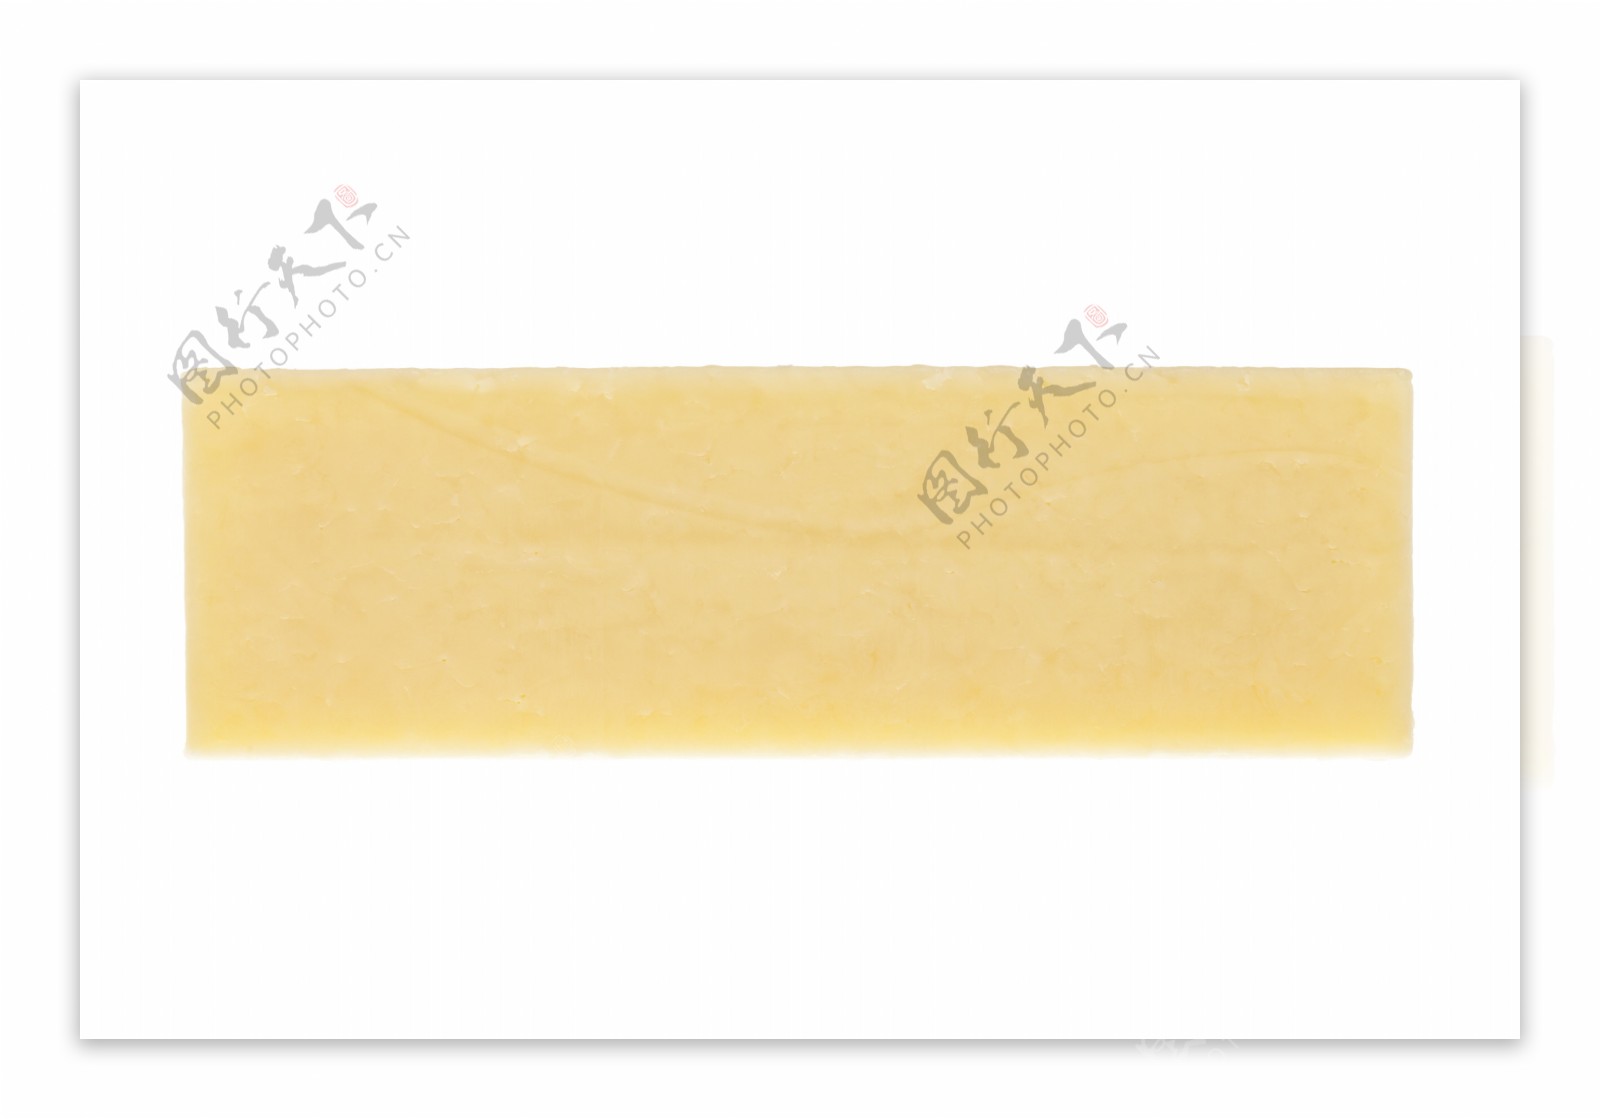 马苏里拉奶酪图片